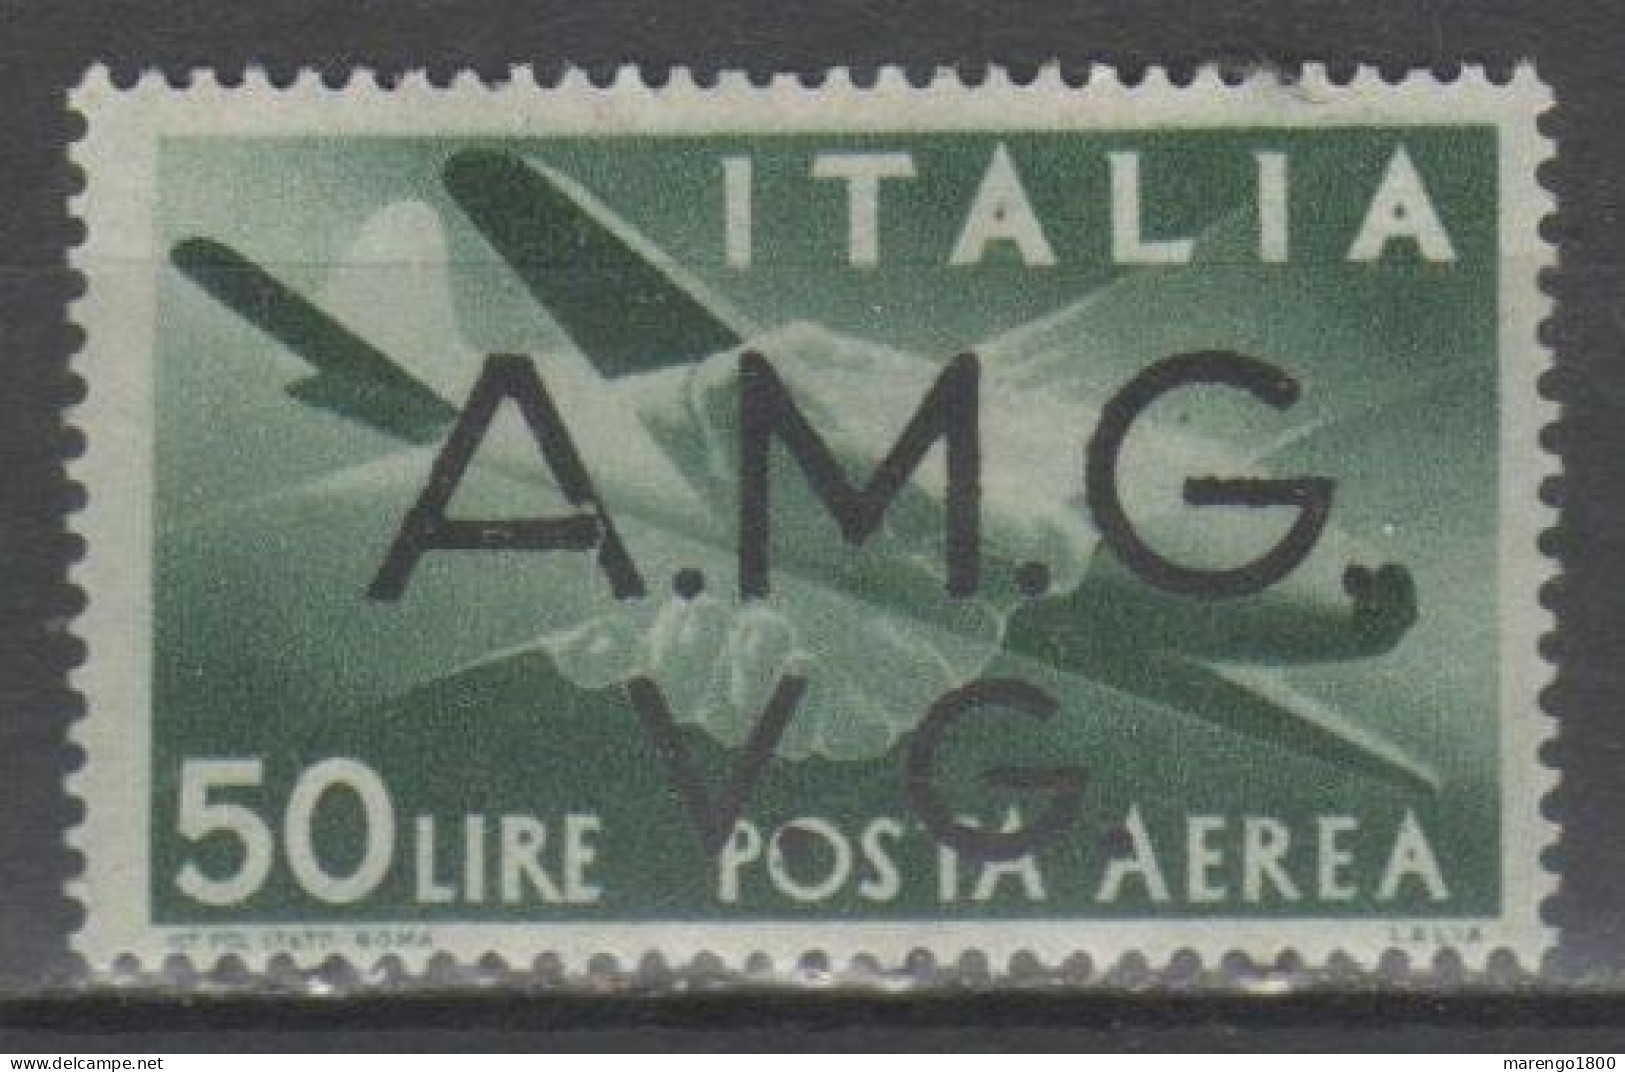 AMG VG 1946 - Posta Aerea 50 L.  * - Ungebraucht